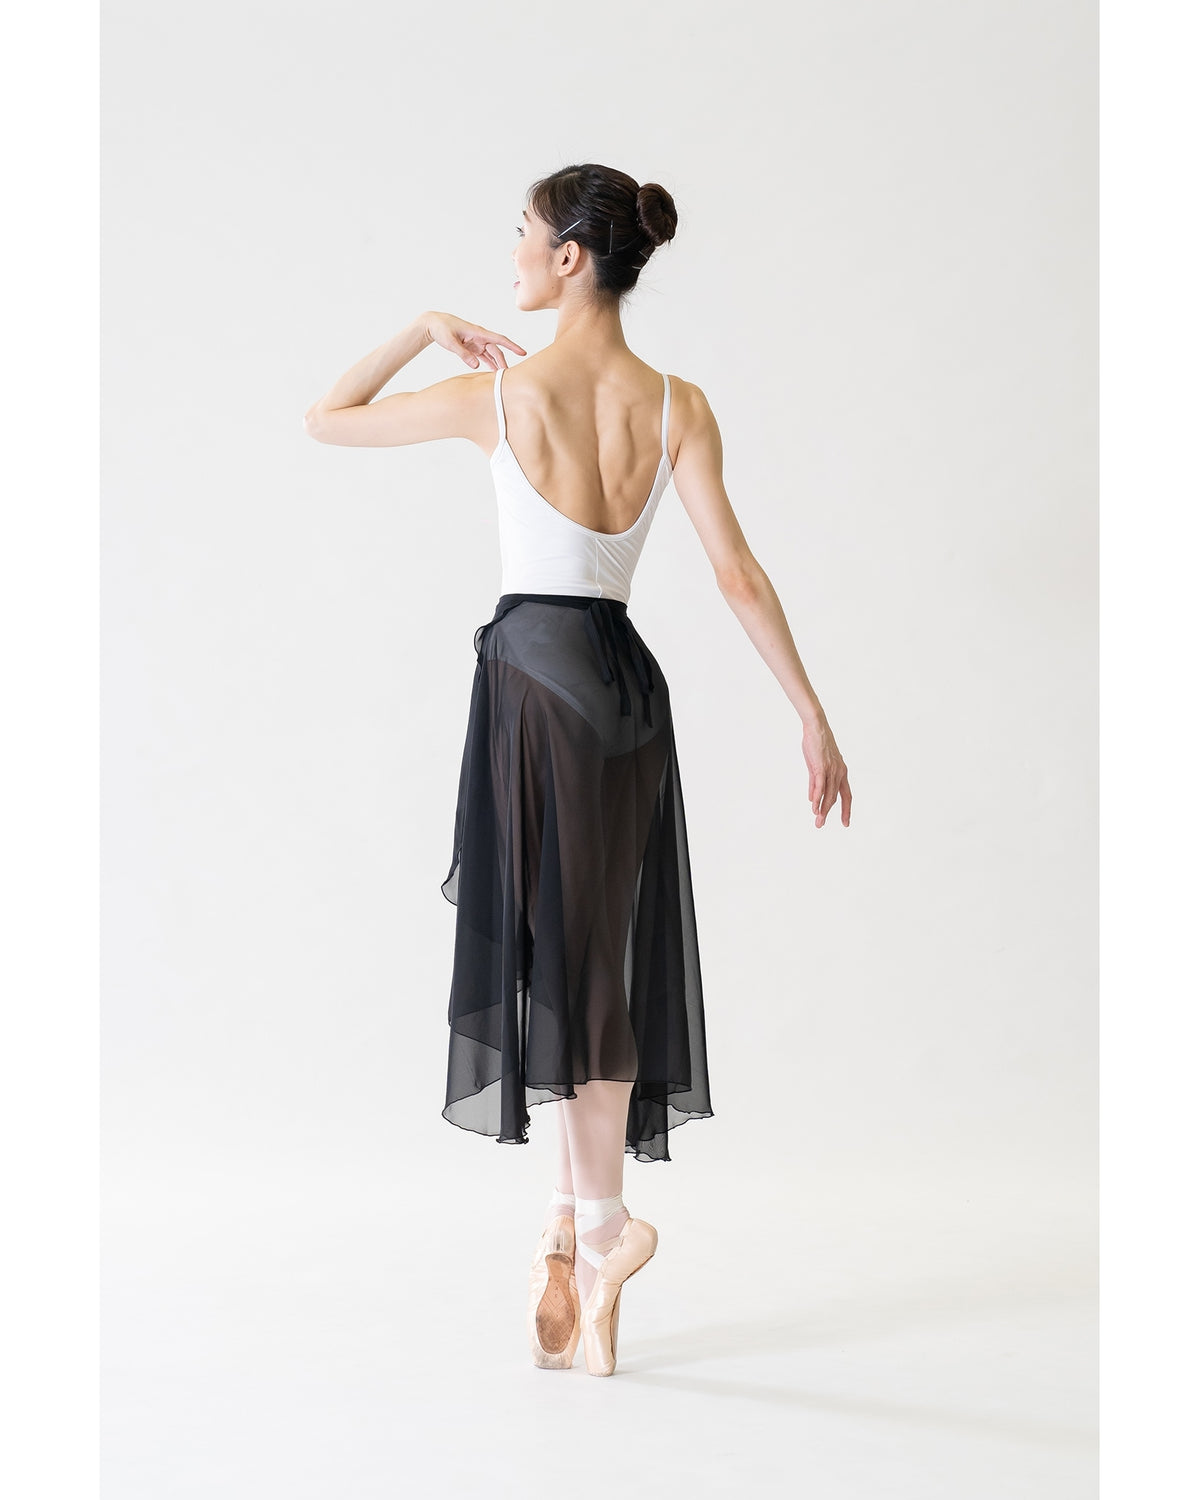 Sonata Rehearsal Long Wrap Skirt - WSK14 Womens - Dancewear - Skirts - Dancewear Centre Canada